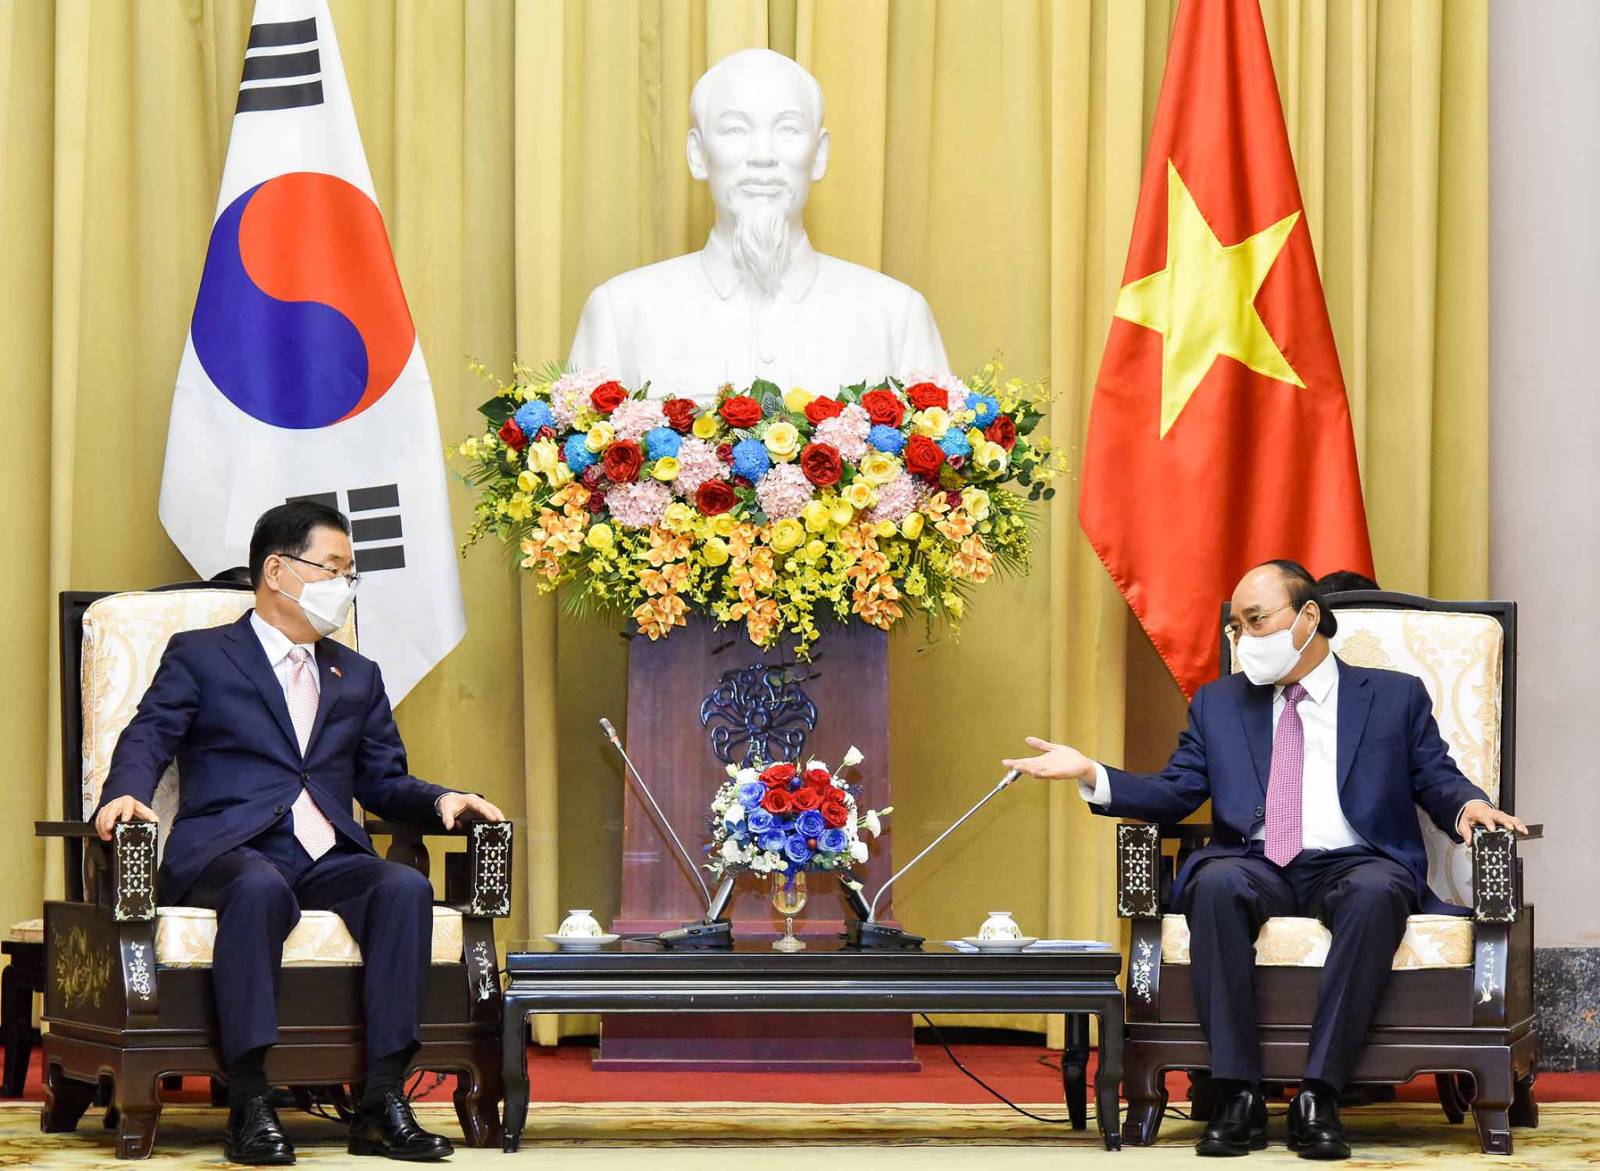 Quan hệ Việt Nam-Hàn Quốc không chỉ là sự hợp tác về mặt kinh tế mà còn là mối quan hệ đối tác chiến lược. Chúng tôi đã phát triển nhiều dự án chung và đẩy mạnh tăng trưởng kinh tế cả hai nước. Hình ảnh liên quan giúp bạn có thể hiểu sâu hơn về quan hệ này.